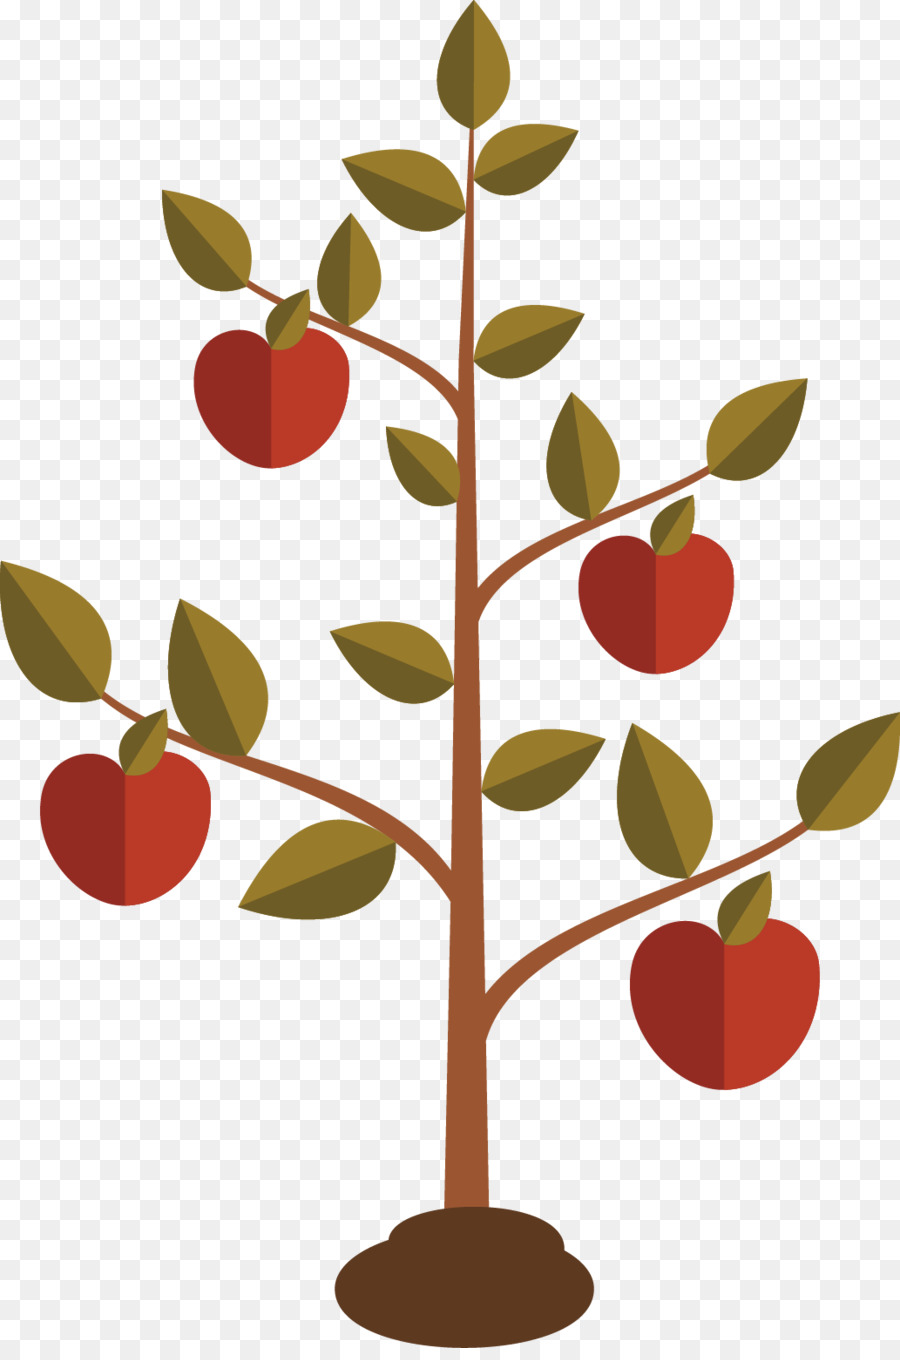 Libri di Samuele Capitoli e versetti della Bibbia Nuova Versione Internazionale 2 Samuele 7 - Flat design di apple tree